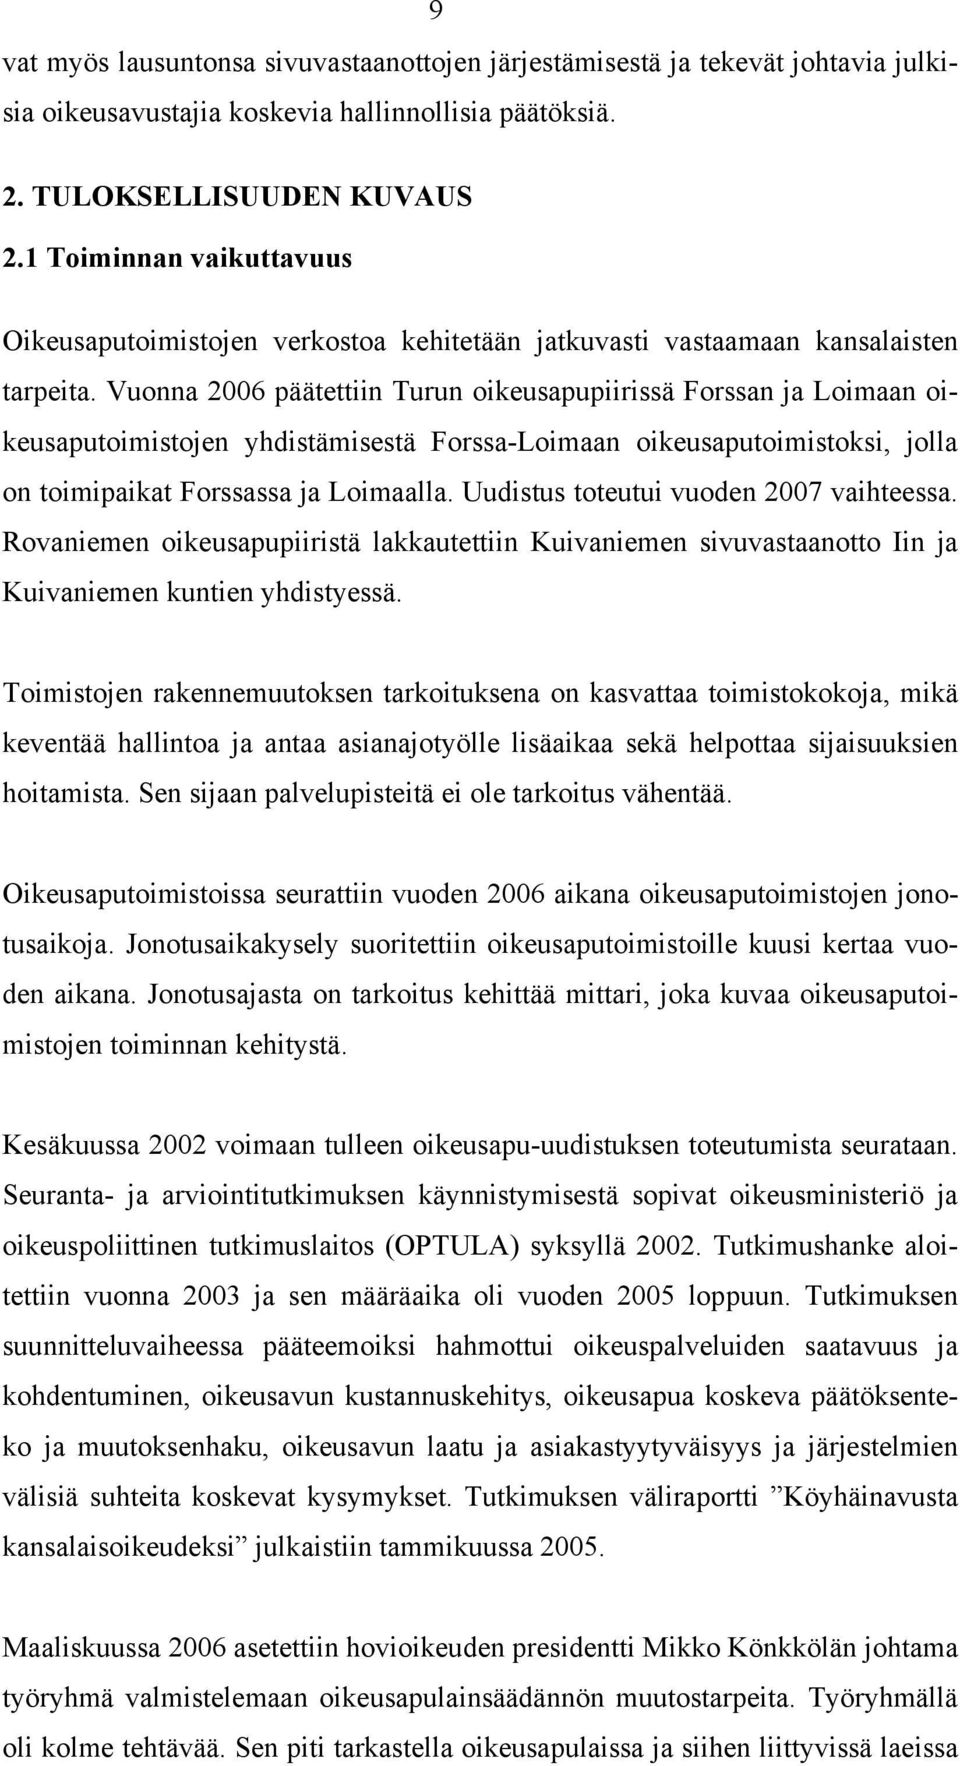 Vuonna 2006 päätettiin Turun oikeusapupiirissä Forssan ja Loimaan oikeusaputoimistojen yhdistämisestä Forssa-Loimaan oikeusaputoimistoksi, jolla on toimipaikat Forssassa ja Loimaalla.